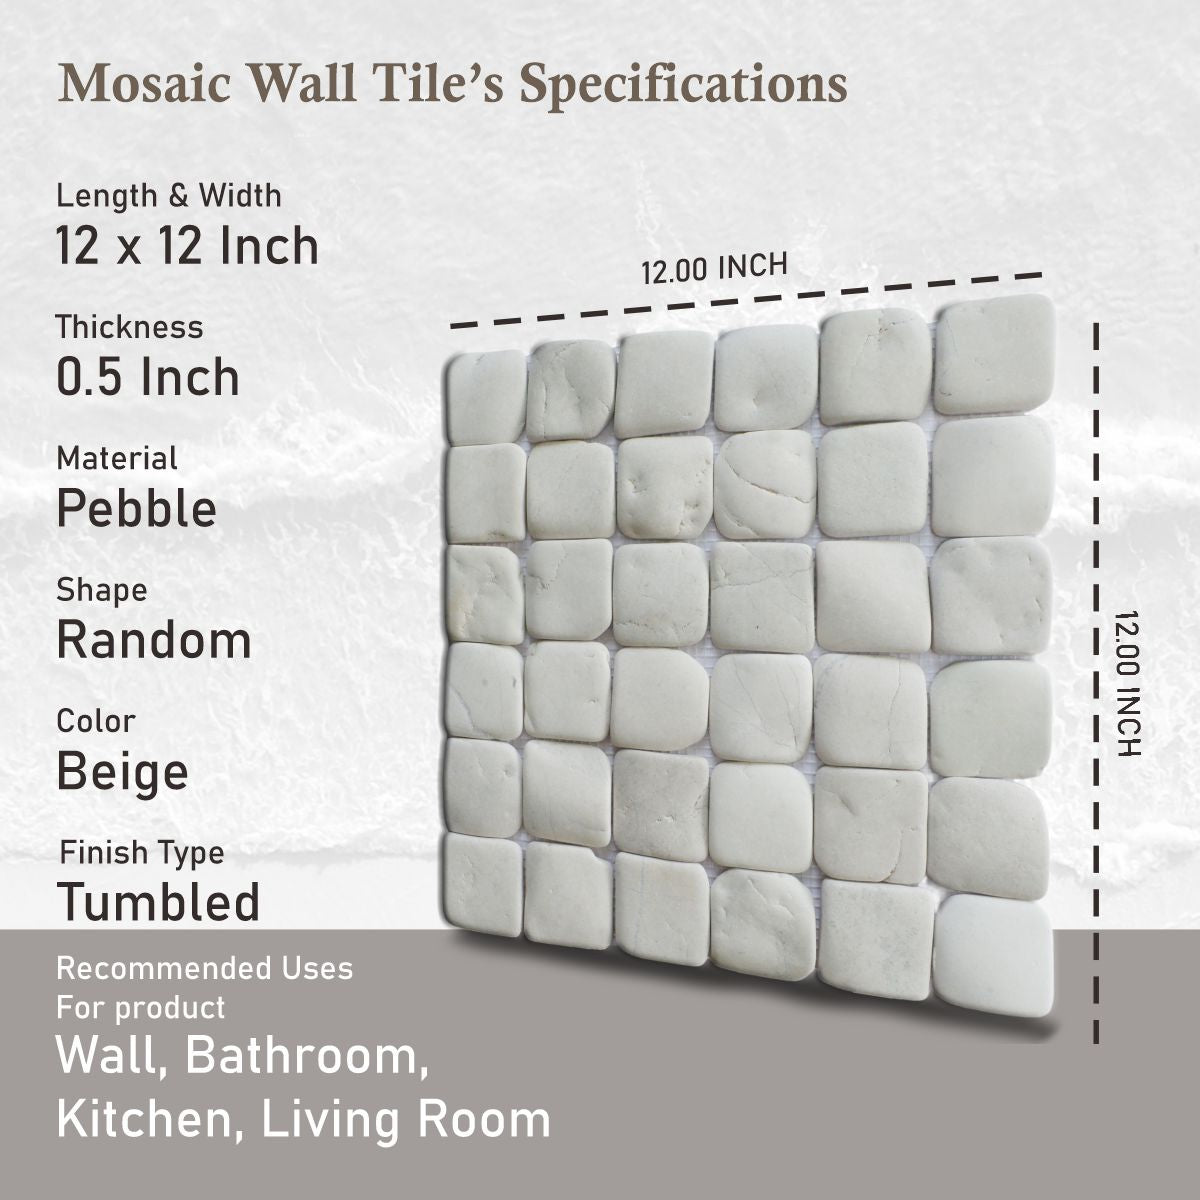 White Natural Stone Mosaic Tile, Molar 5 White Mosaic Tile